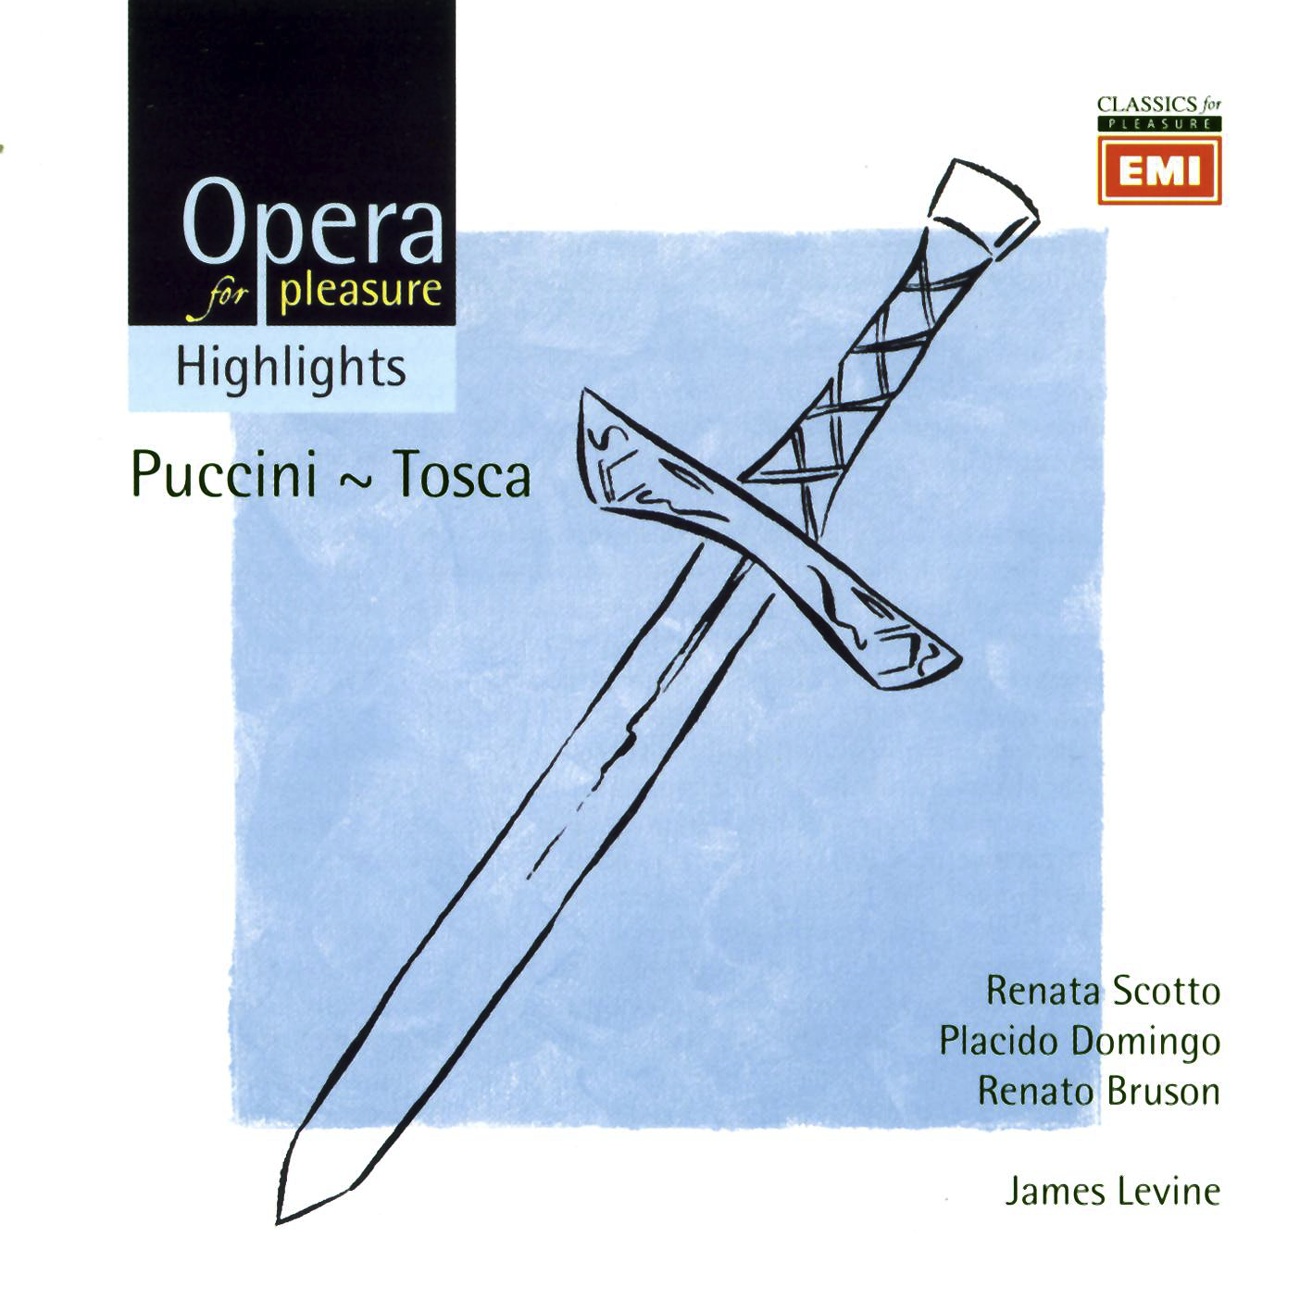 Tosca - Opera in three acts (1997 Digital Remaster), Act II: Se la guirata fede debbo tradir (Scarpia, Tosca)